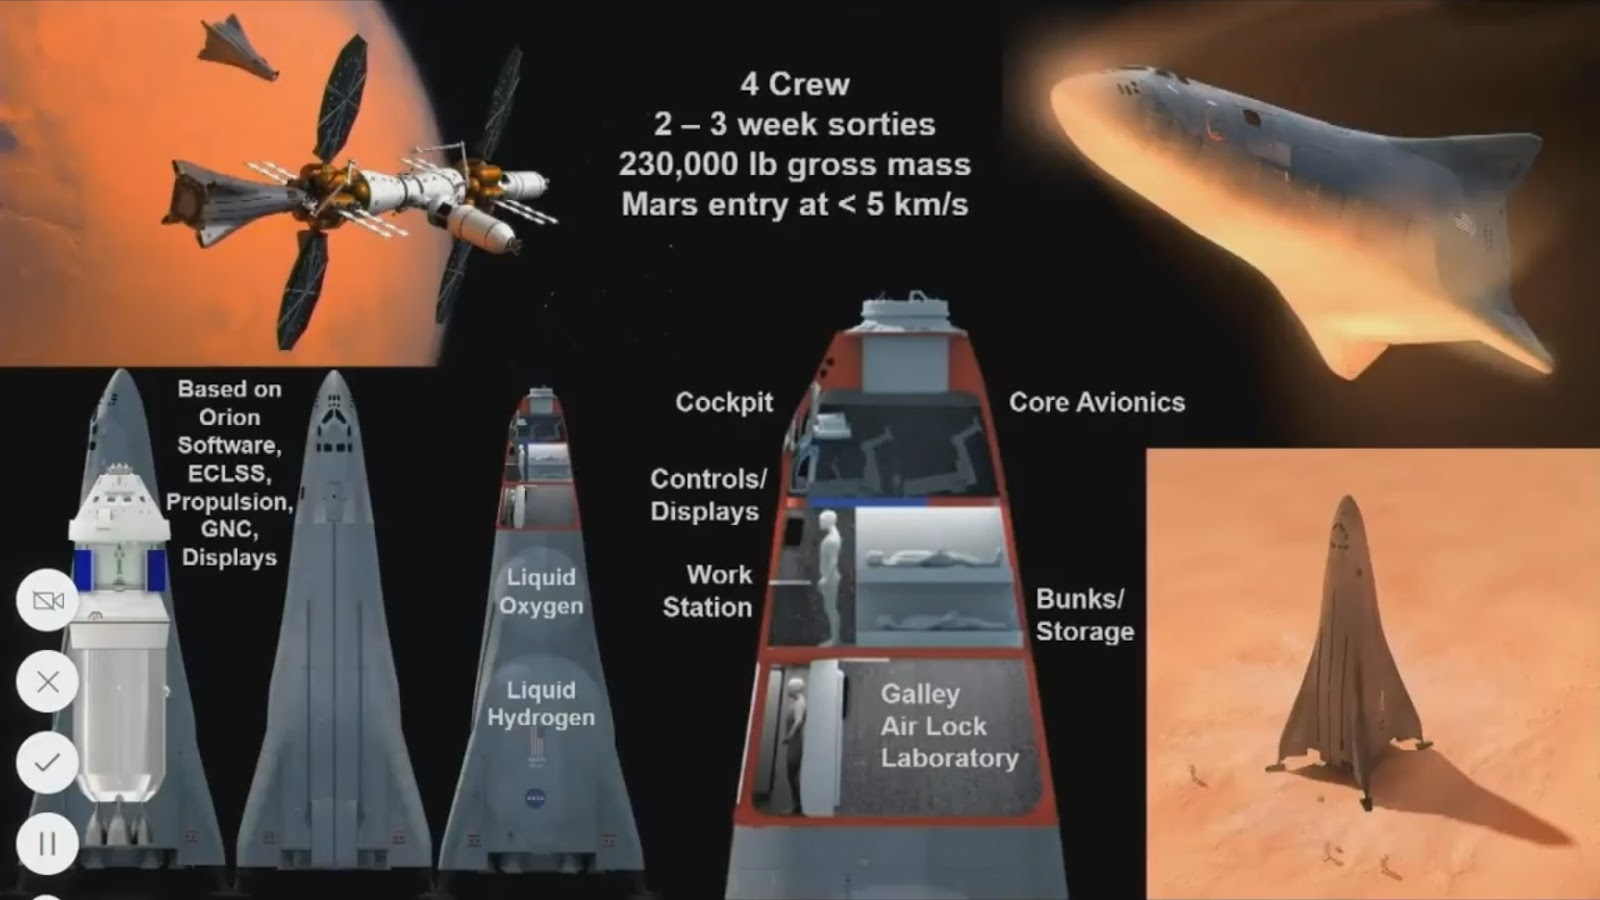 Lockheed+Martin+Mars+lander+concept+for+Mars+Base+Camp.jpg